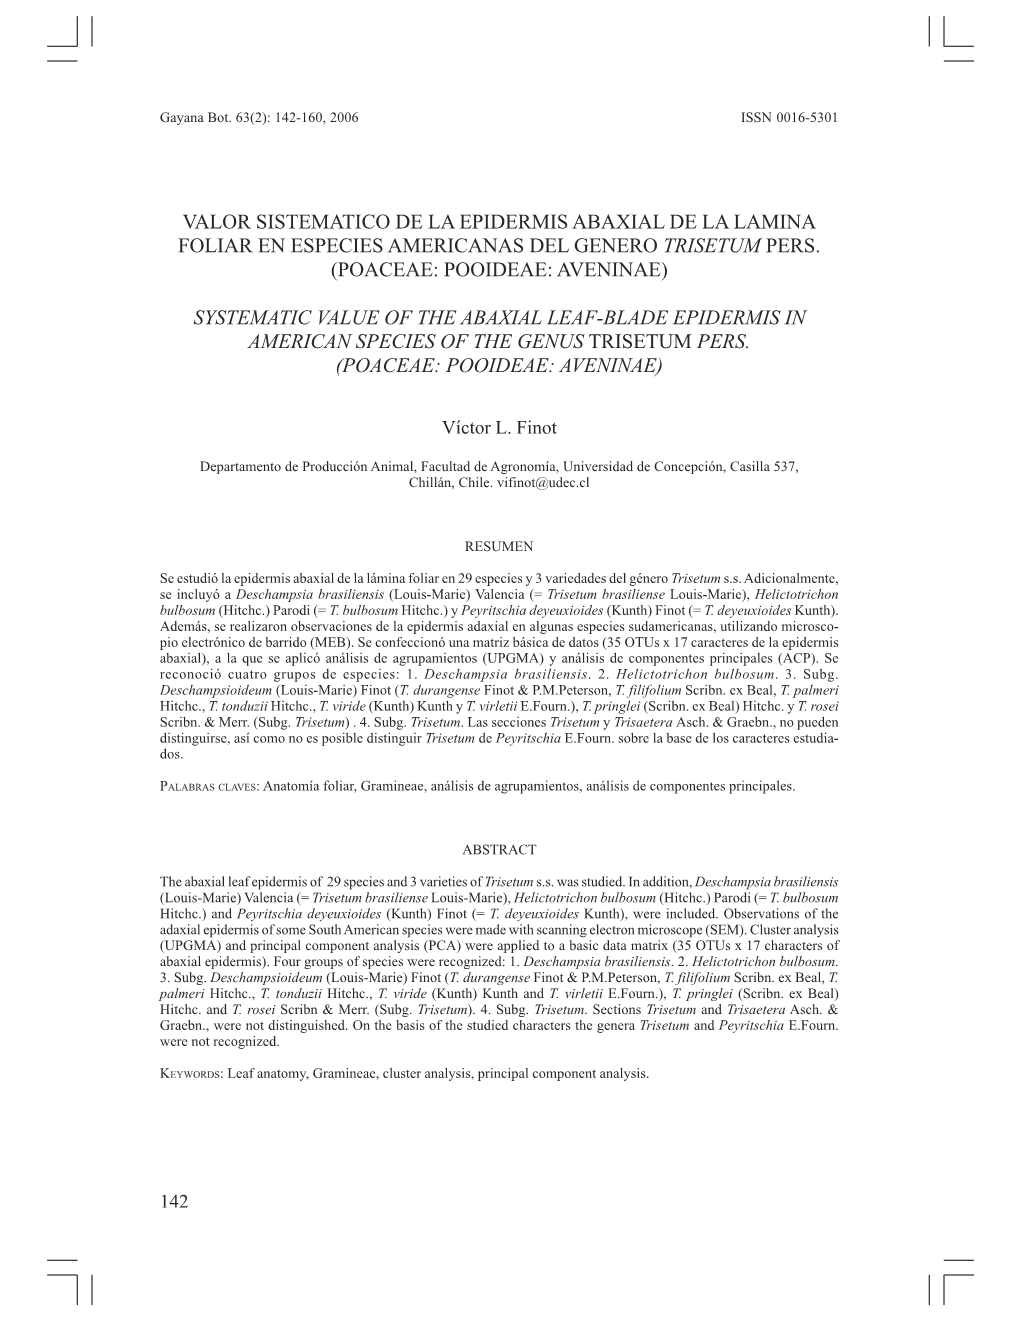 Valor Sistematico De La Epidermis Abaxial De La Lamina Foliar En Especies Americanas Del Genero Trisetum Pers